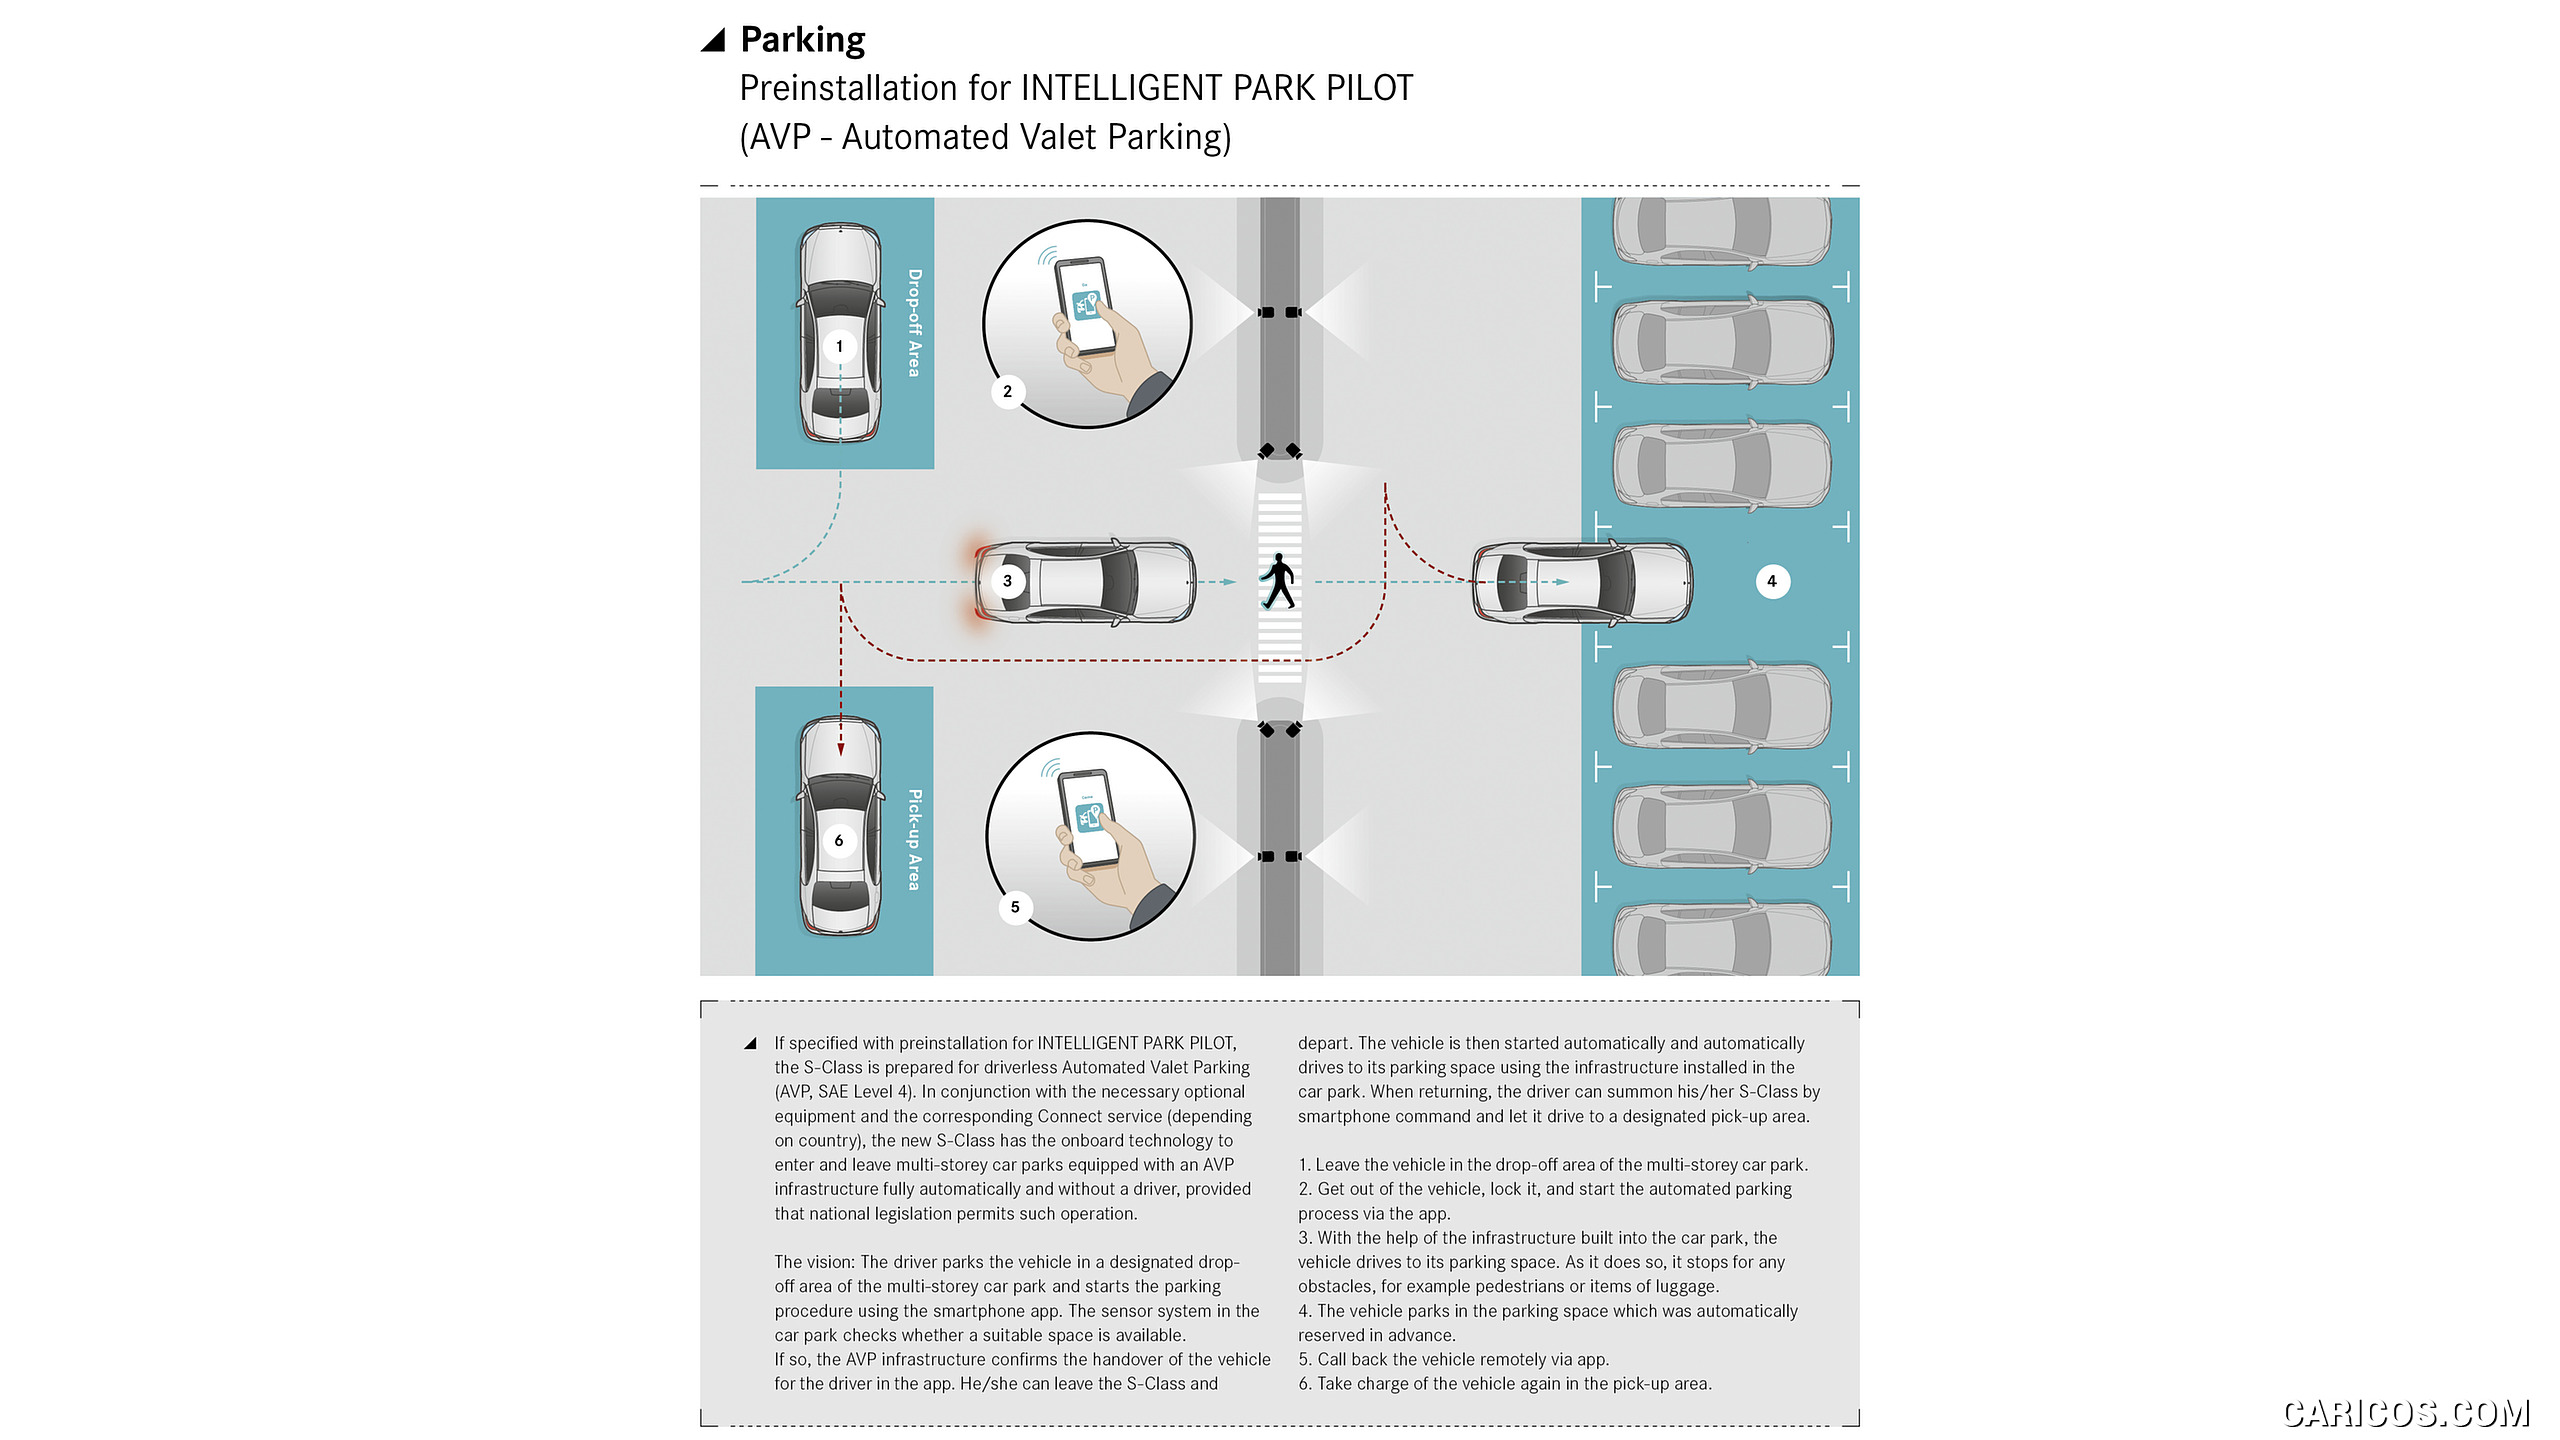 2021 Mercedes-Benz S-Class - Parking assistance: Preinstallation for INTELLIGENT PARK PILOT, #207 of 316